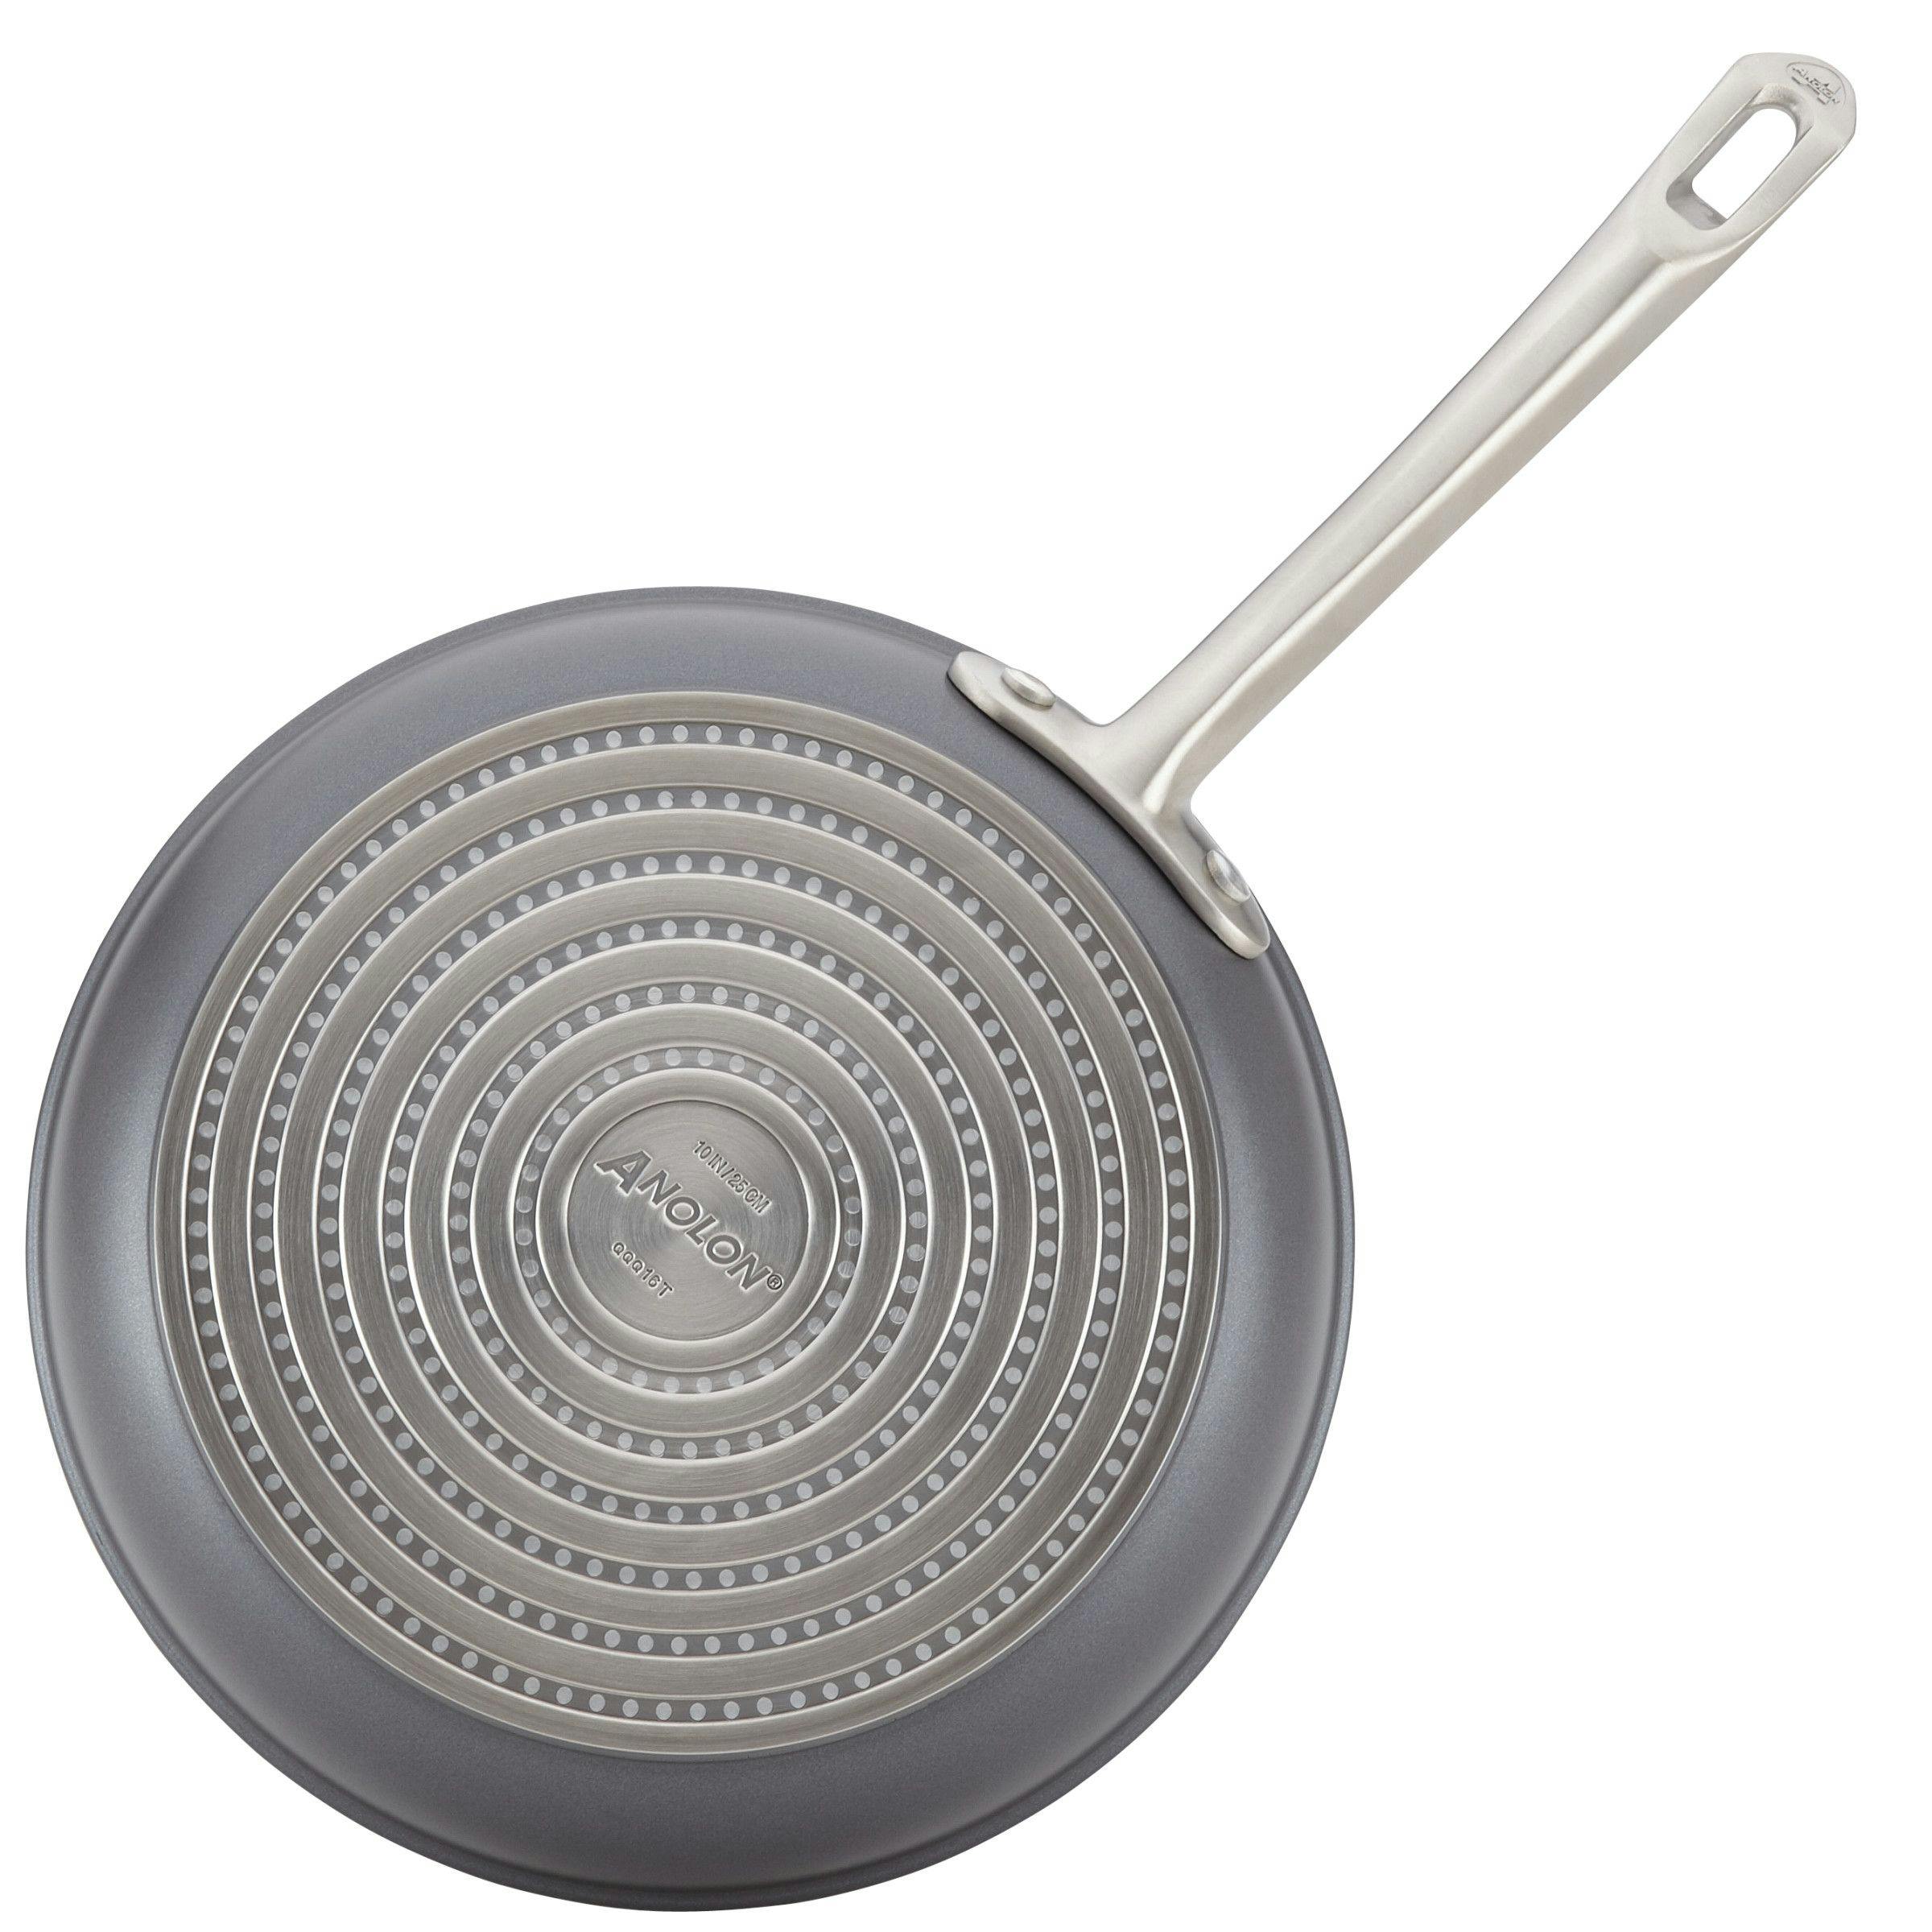 Anolon X Hybrid Nonstick Cookware Induction Pots and Pans Set, 10 Piece &  Reviews